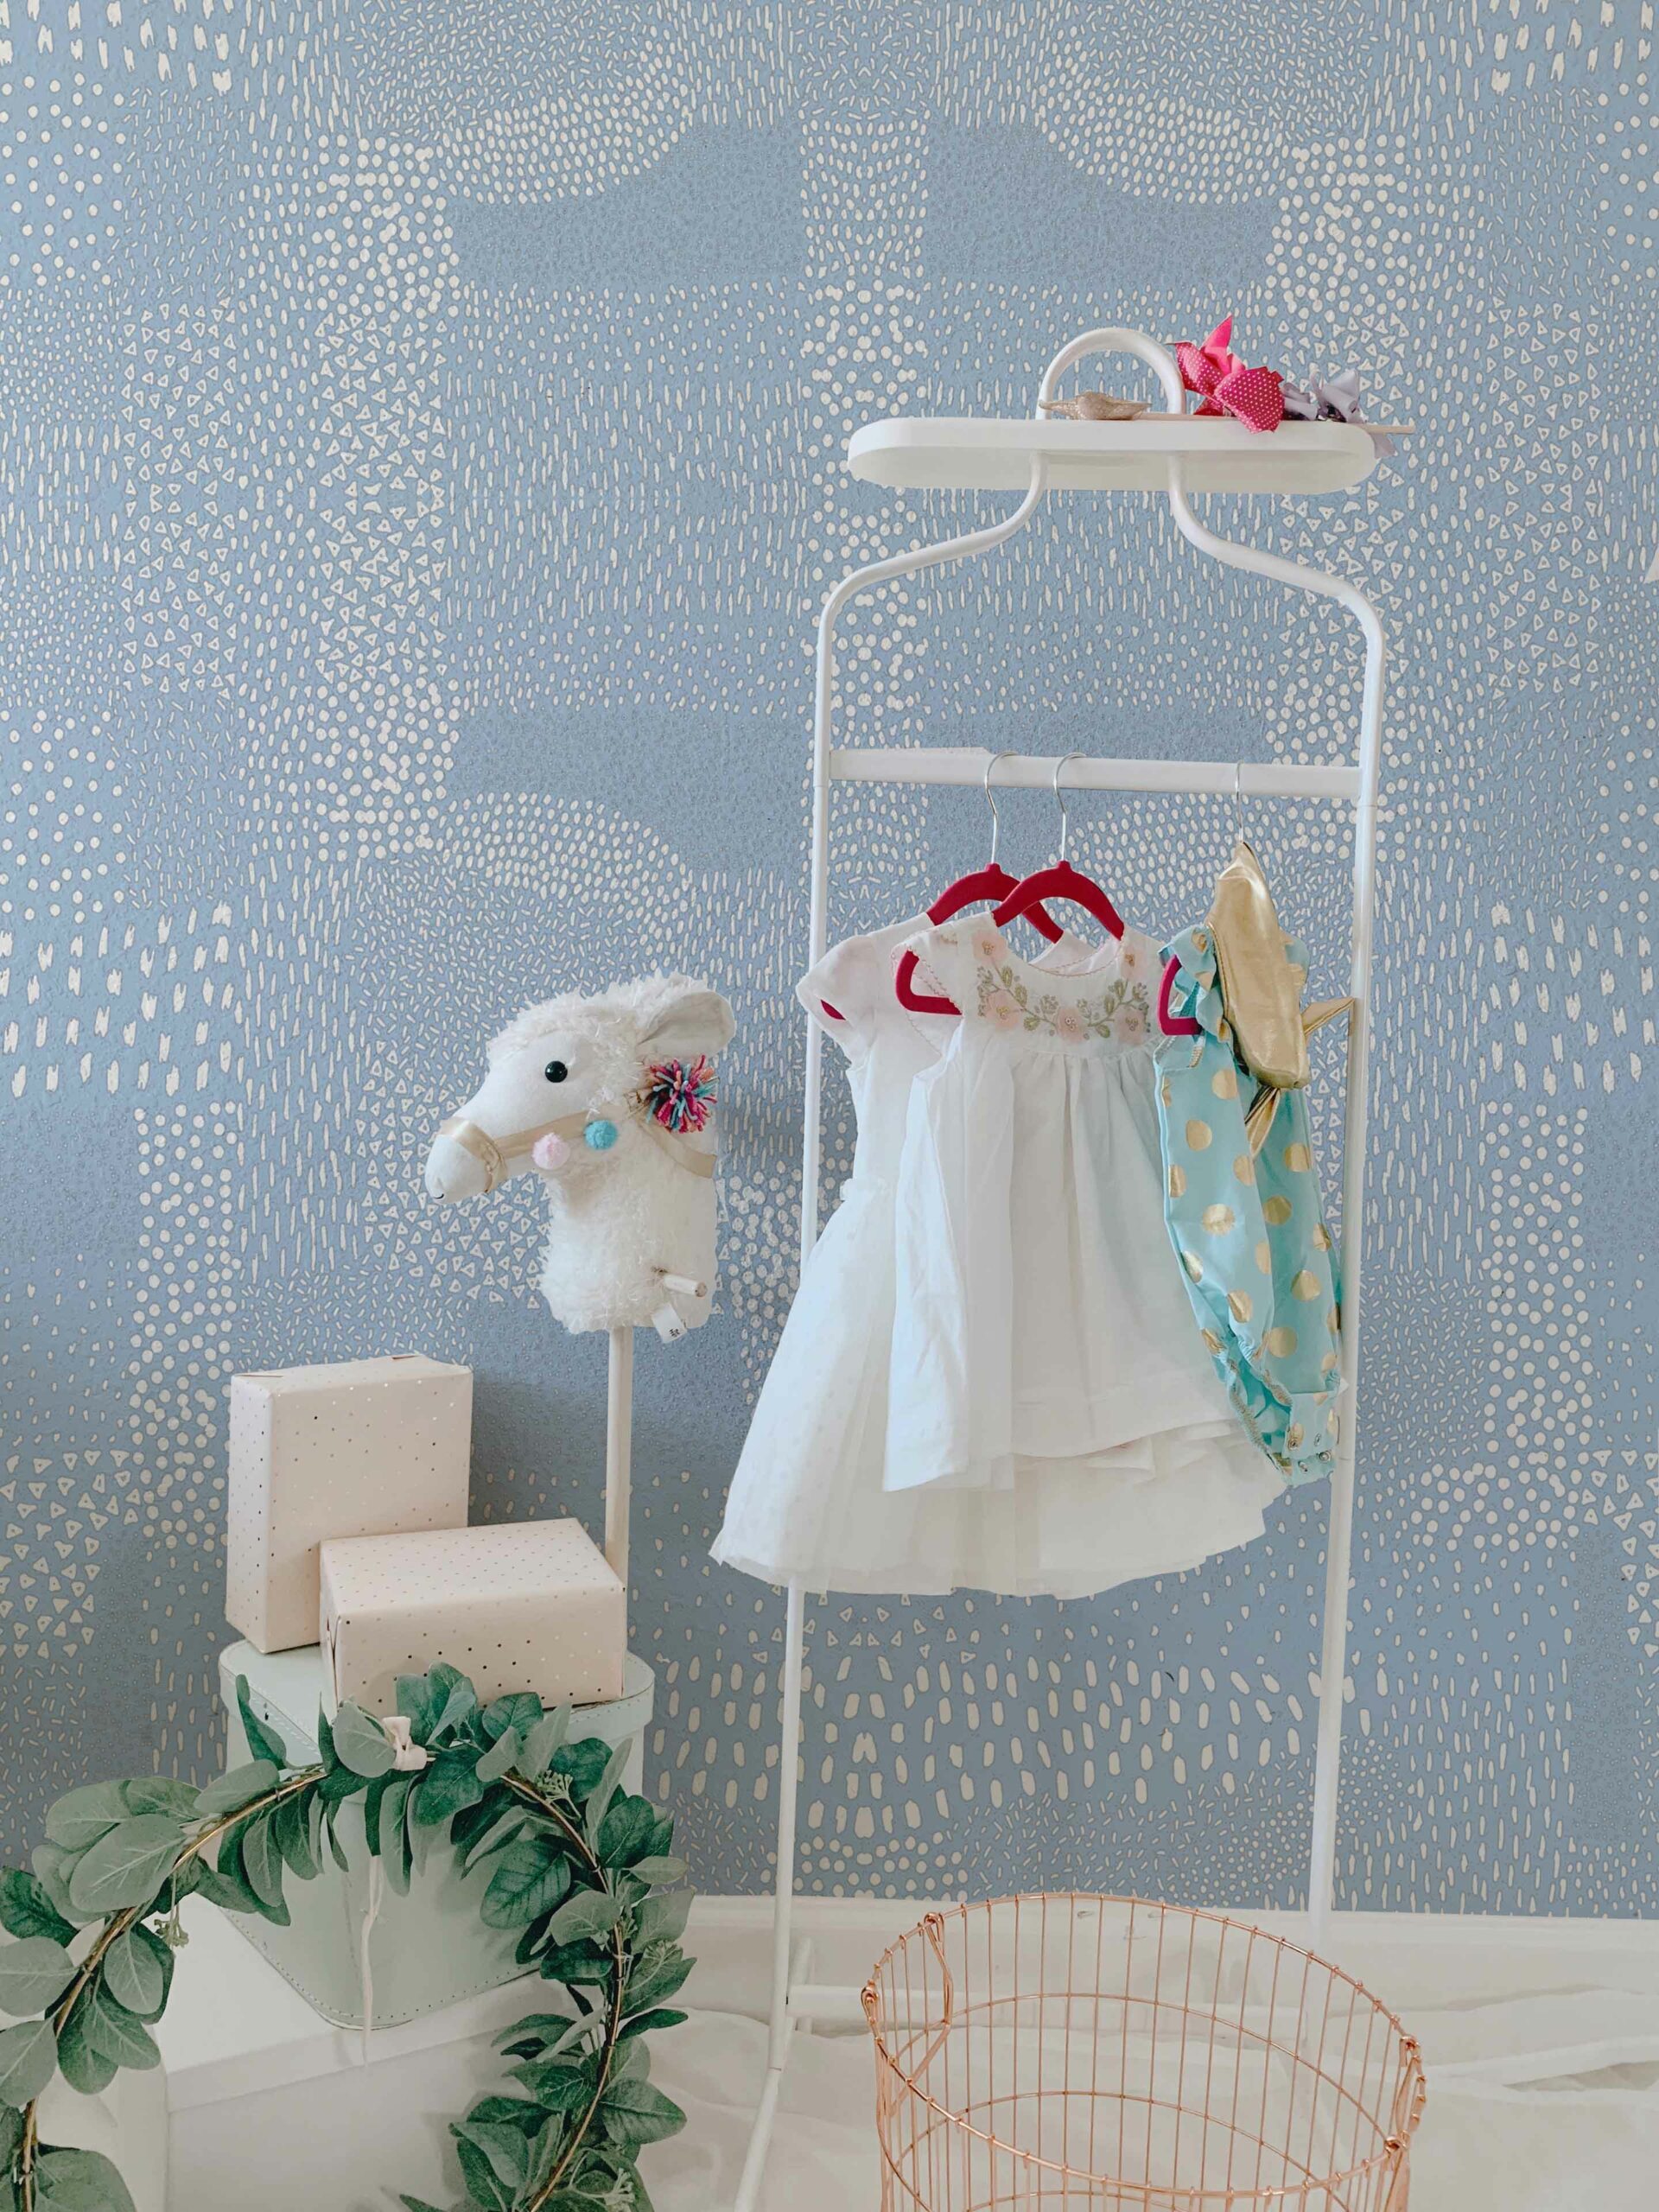 Macchiette-Azzurro-Pervinca-MaVoix-wallpaper-Nursery-Les-Petits